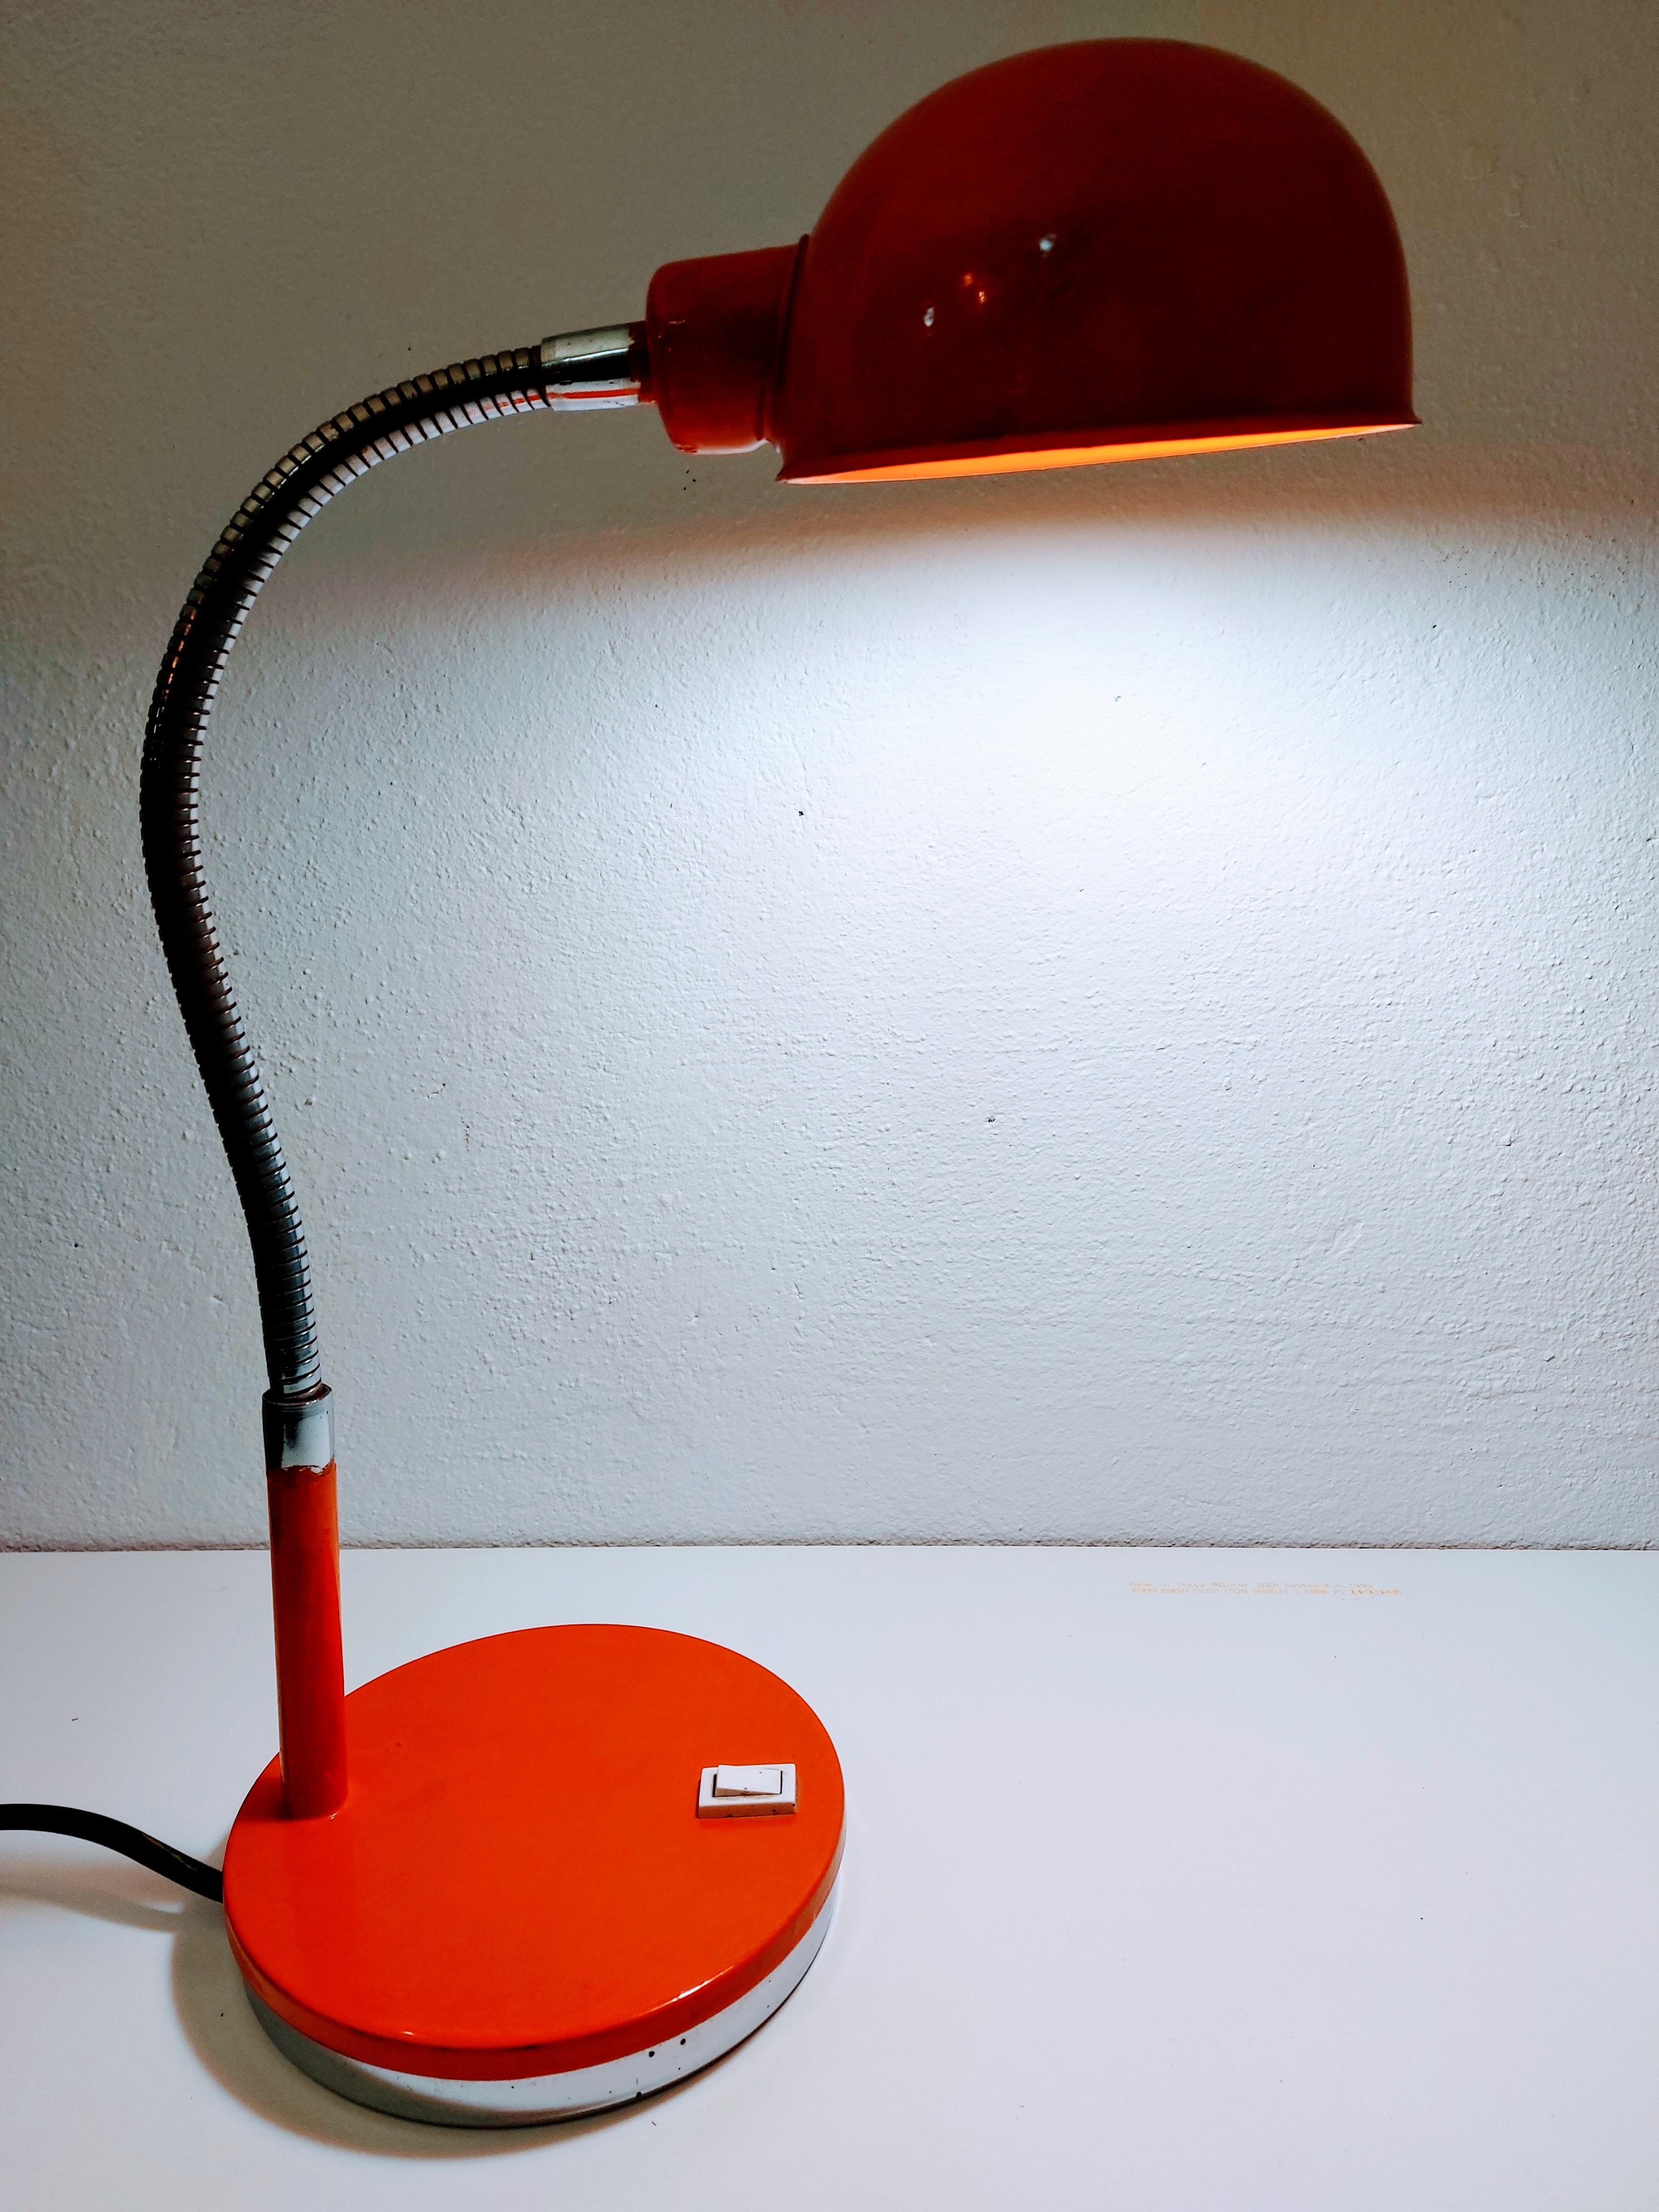 Vintage Tischlampe

Farbe: Orange

MATERIAL: Metall

Zeitraum: 1970s

Stil: Industriell.